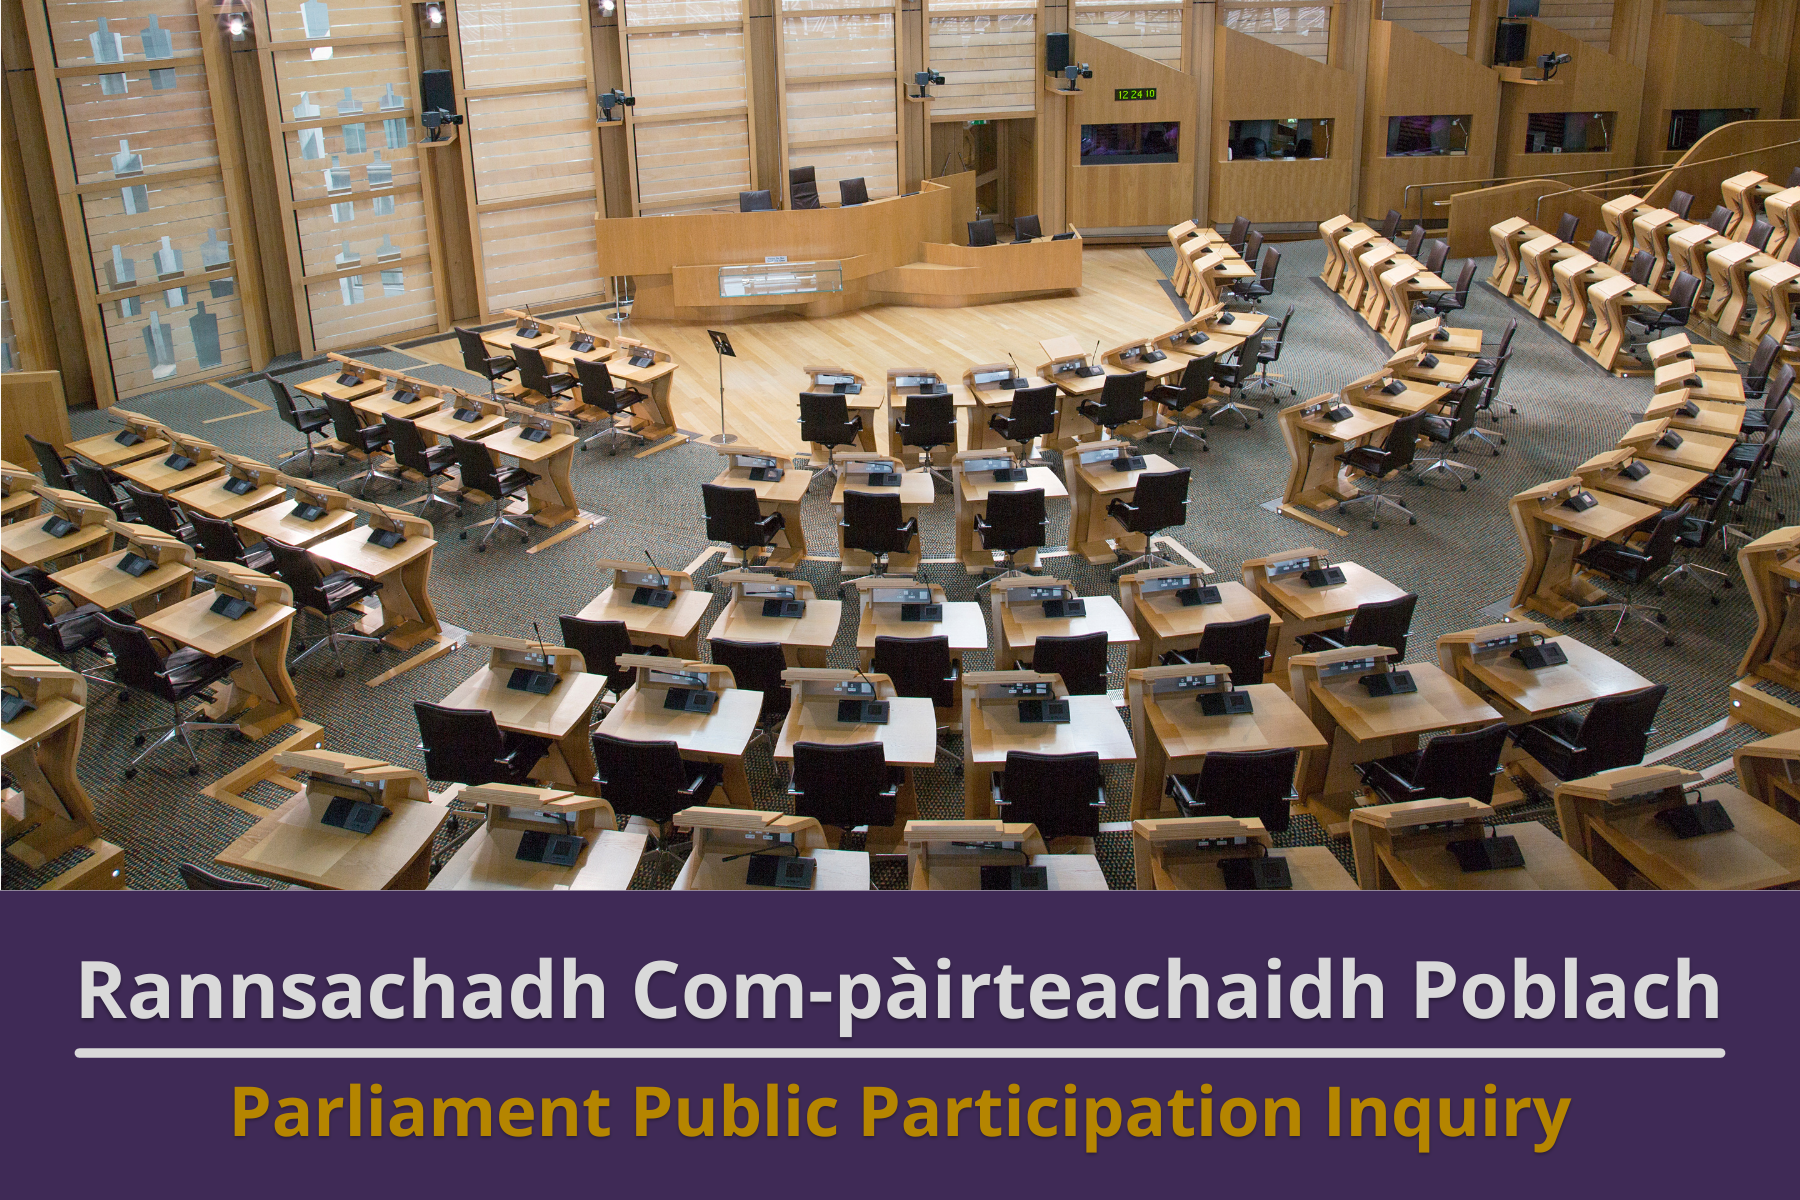 Scottish Parliament Public Participation Inquiry